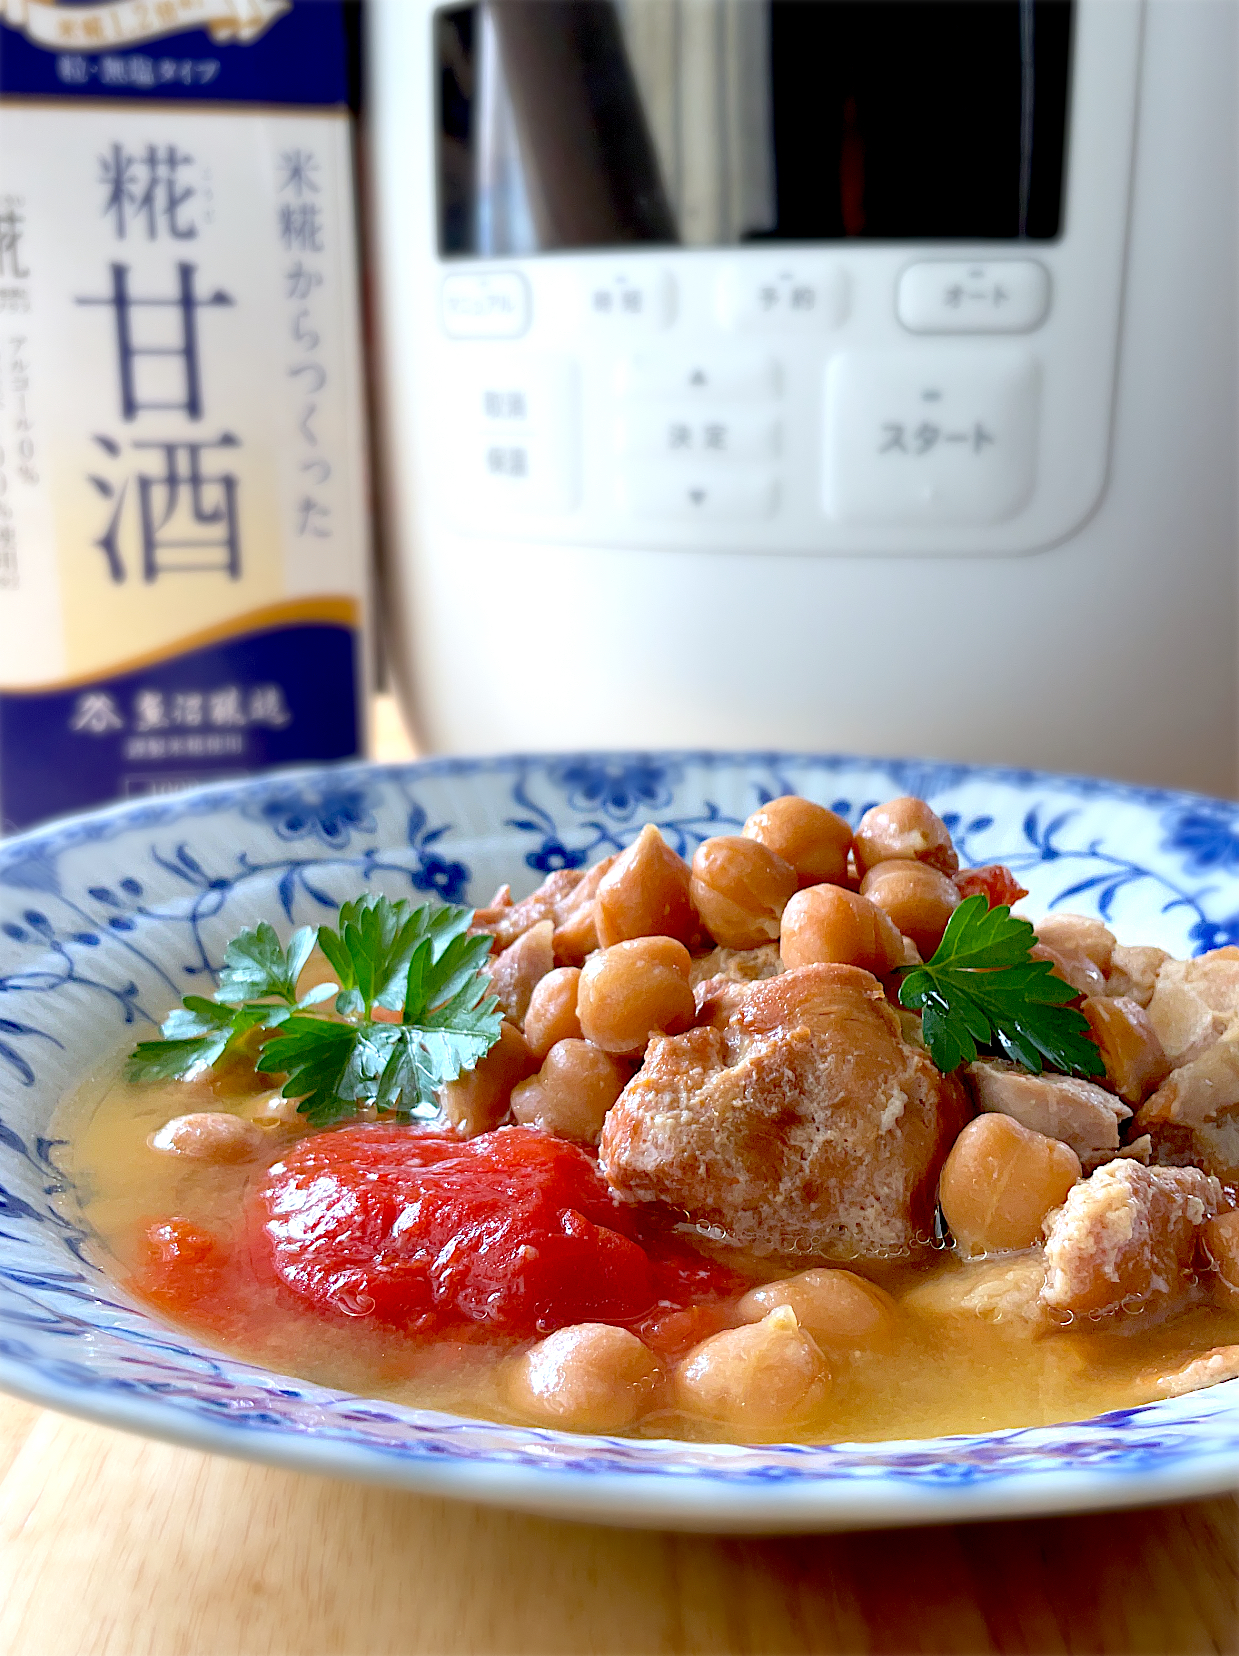 マルコメ キッチンさんの料理 【イベントレシピ】まるごとトマトと鶏肉の甘酒煮